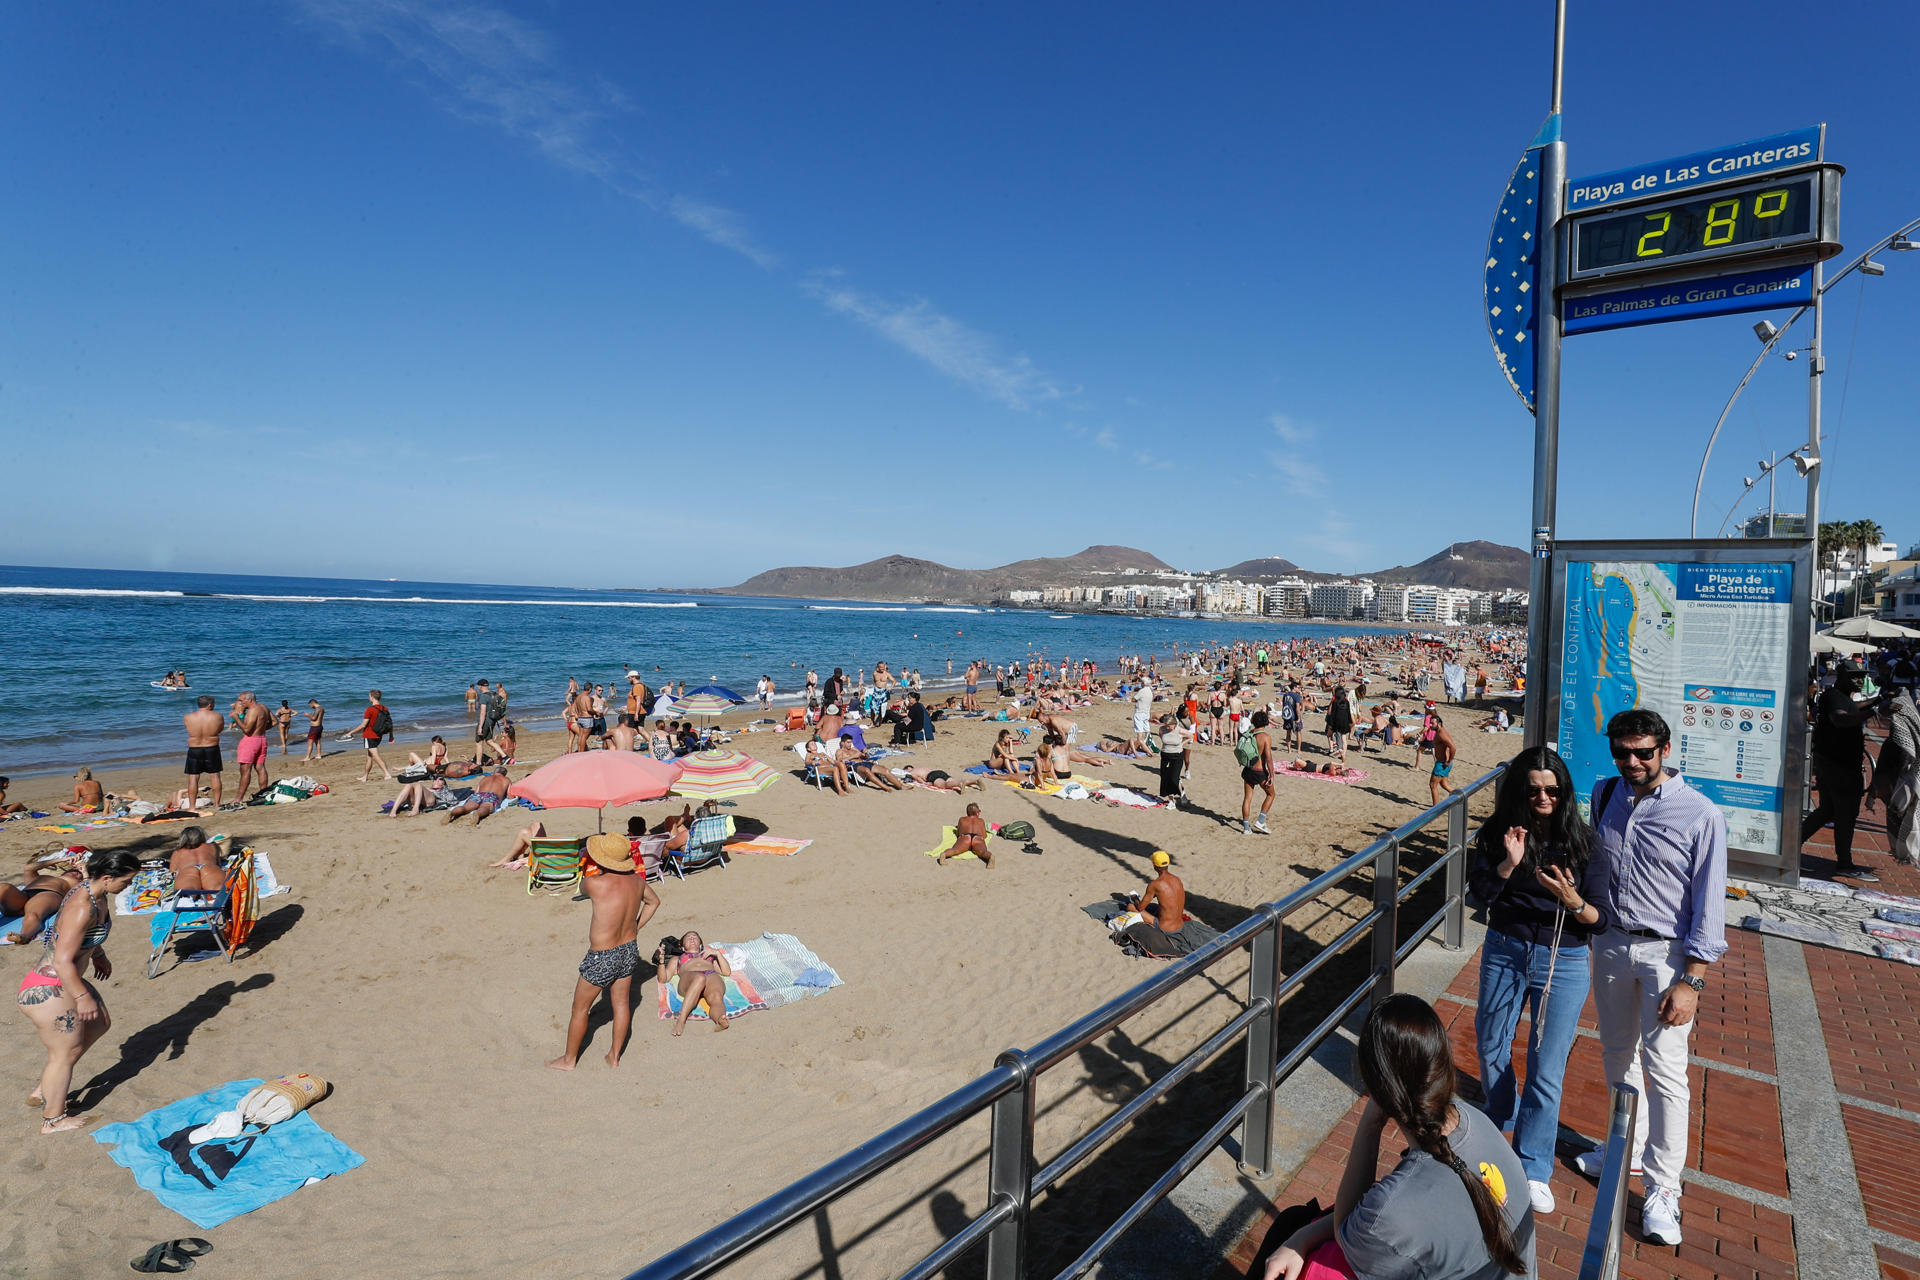 Foto tomada el pasado 25 de diciembre: numerosas personas aprovechan el buen tiempo para pasar el día de Navidad en la playa de Las Canteras de Las Palmas de Gran Canaria. EFE/Elvira Urquijo A.